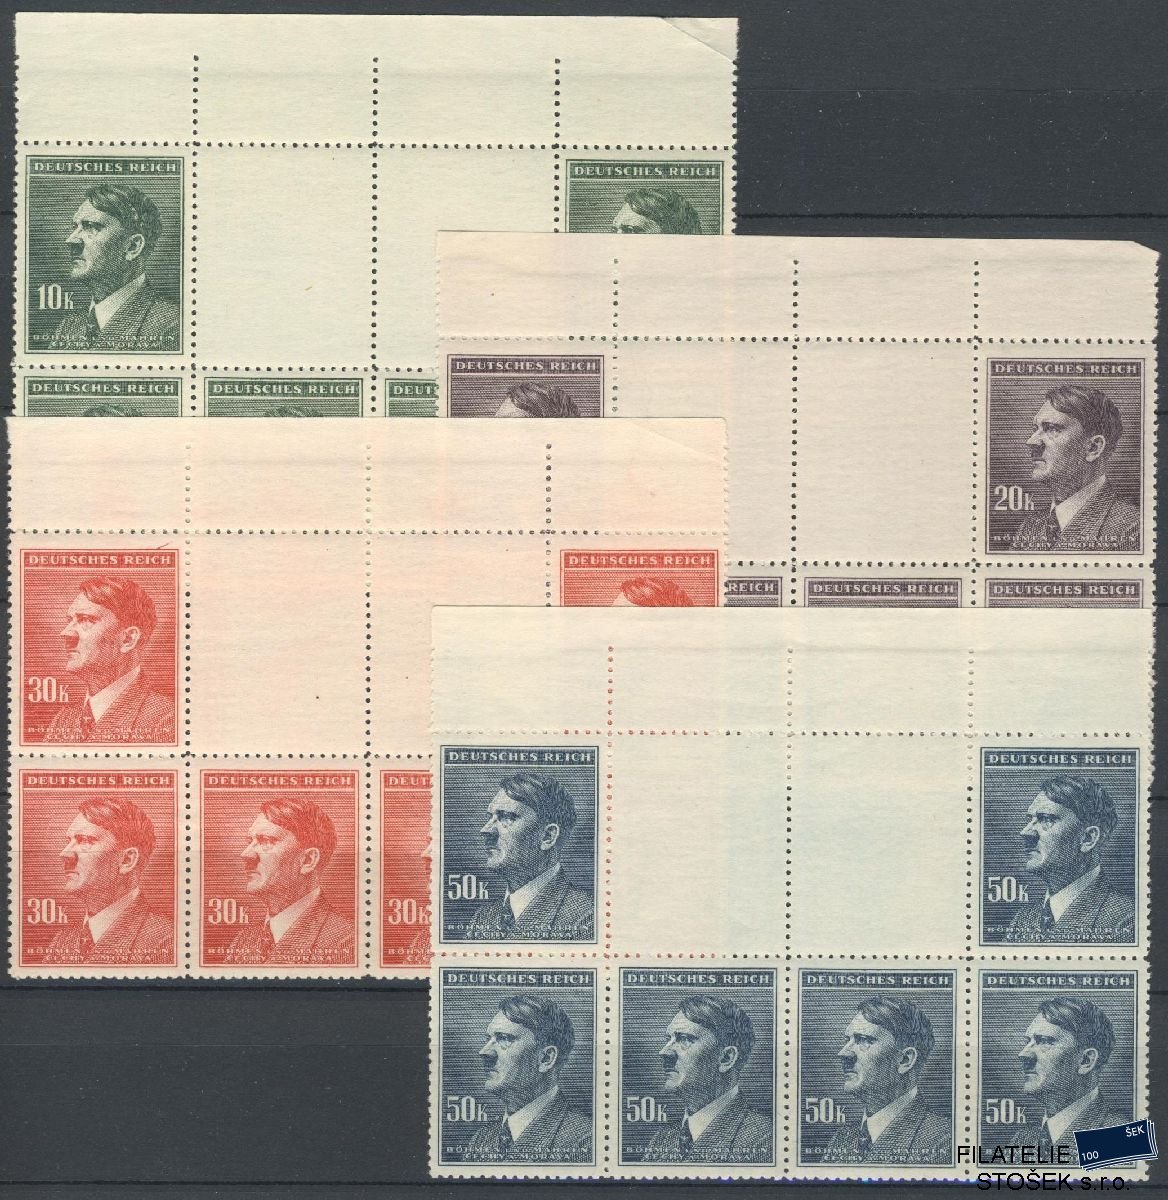 Protektorát známky 96-99 VK